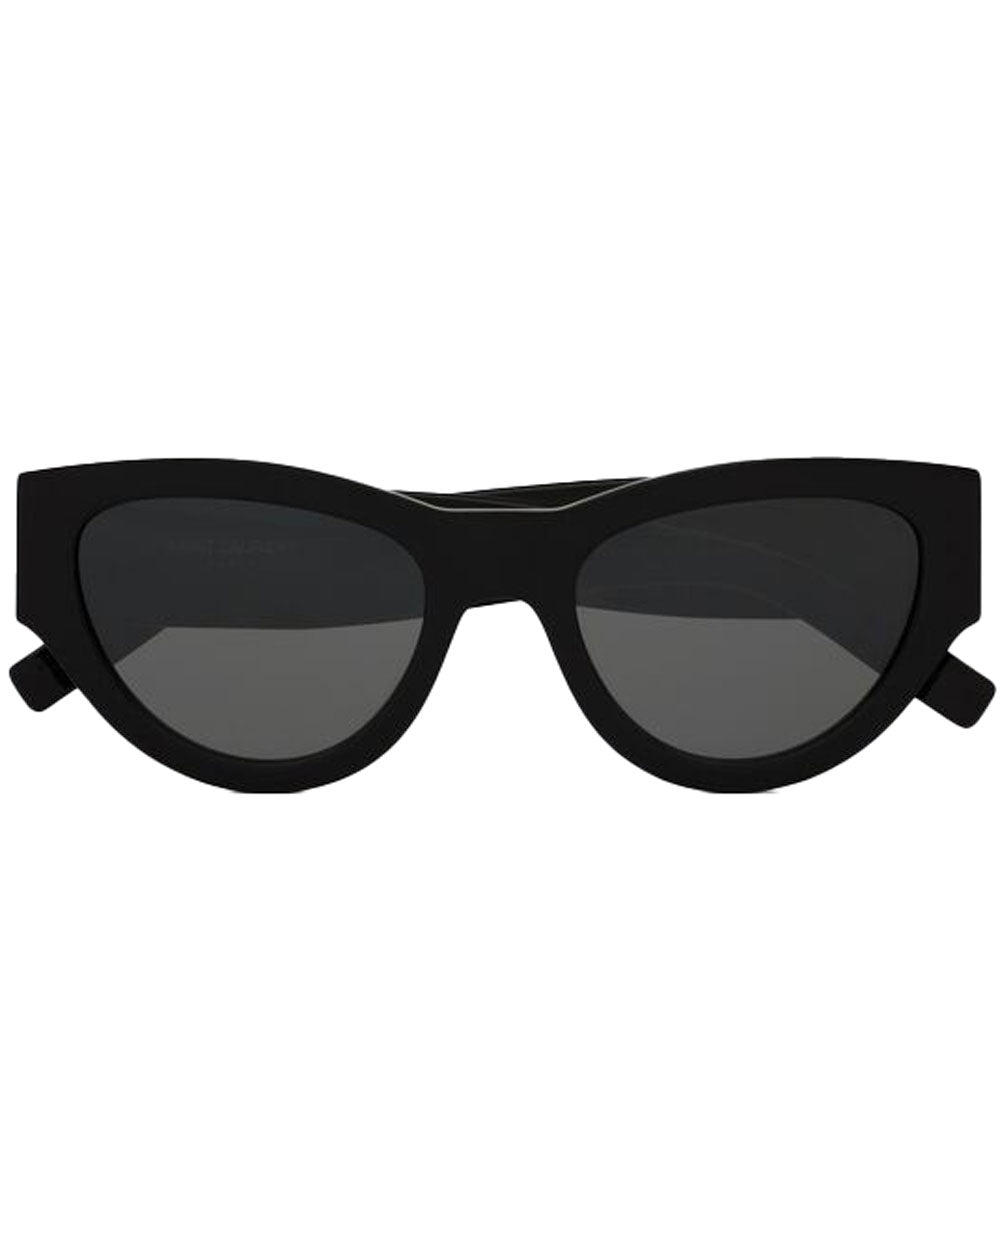 SL Acetate Sunglasses in Black